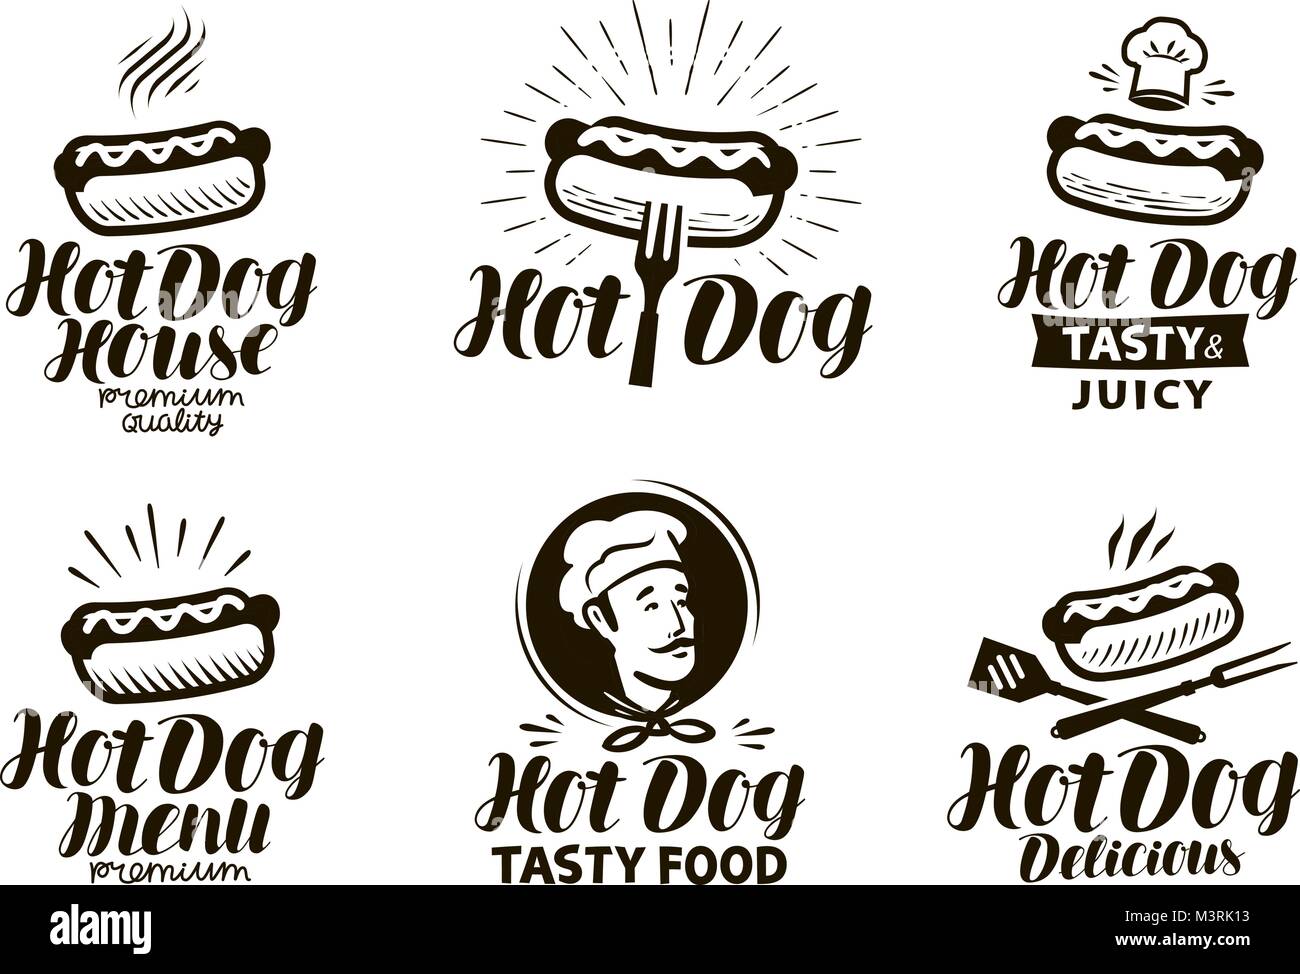 Hot Dog Logo Or Label Fast Food Eating Emblem Typographic